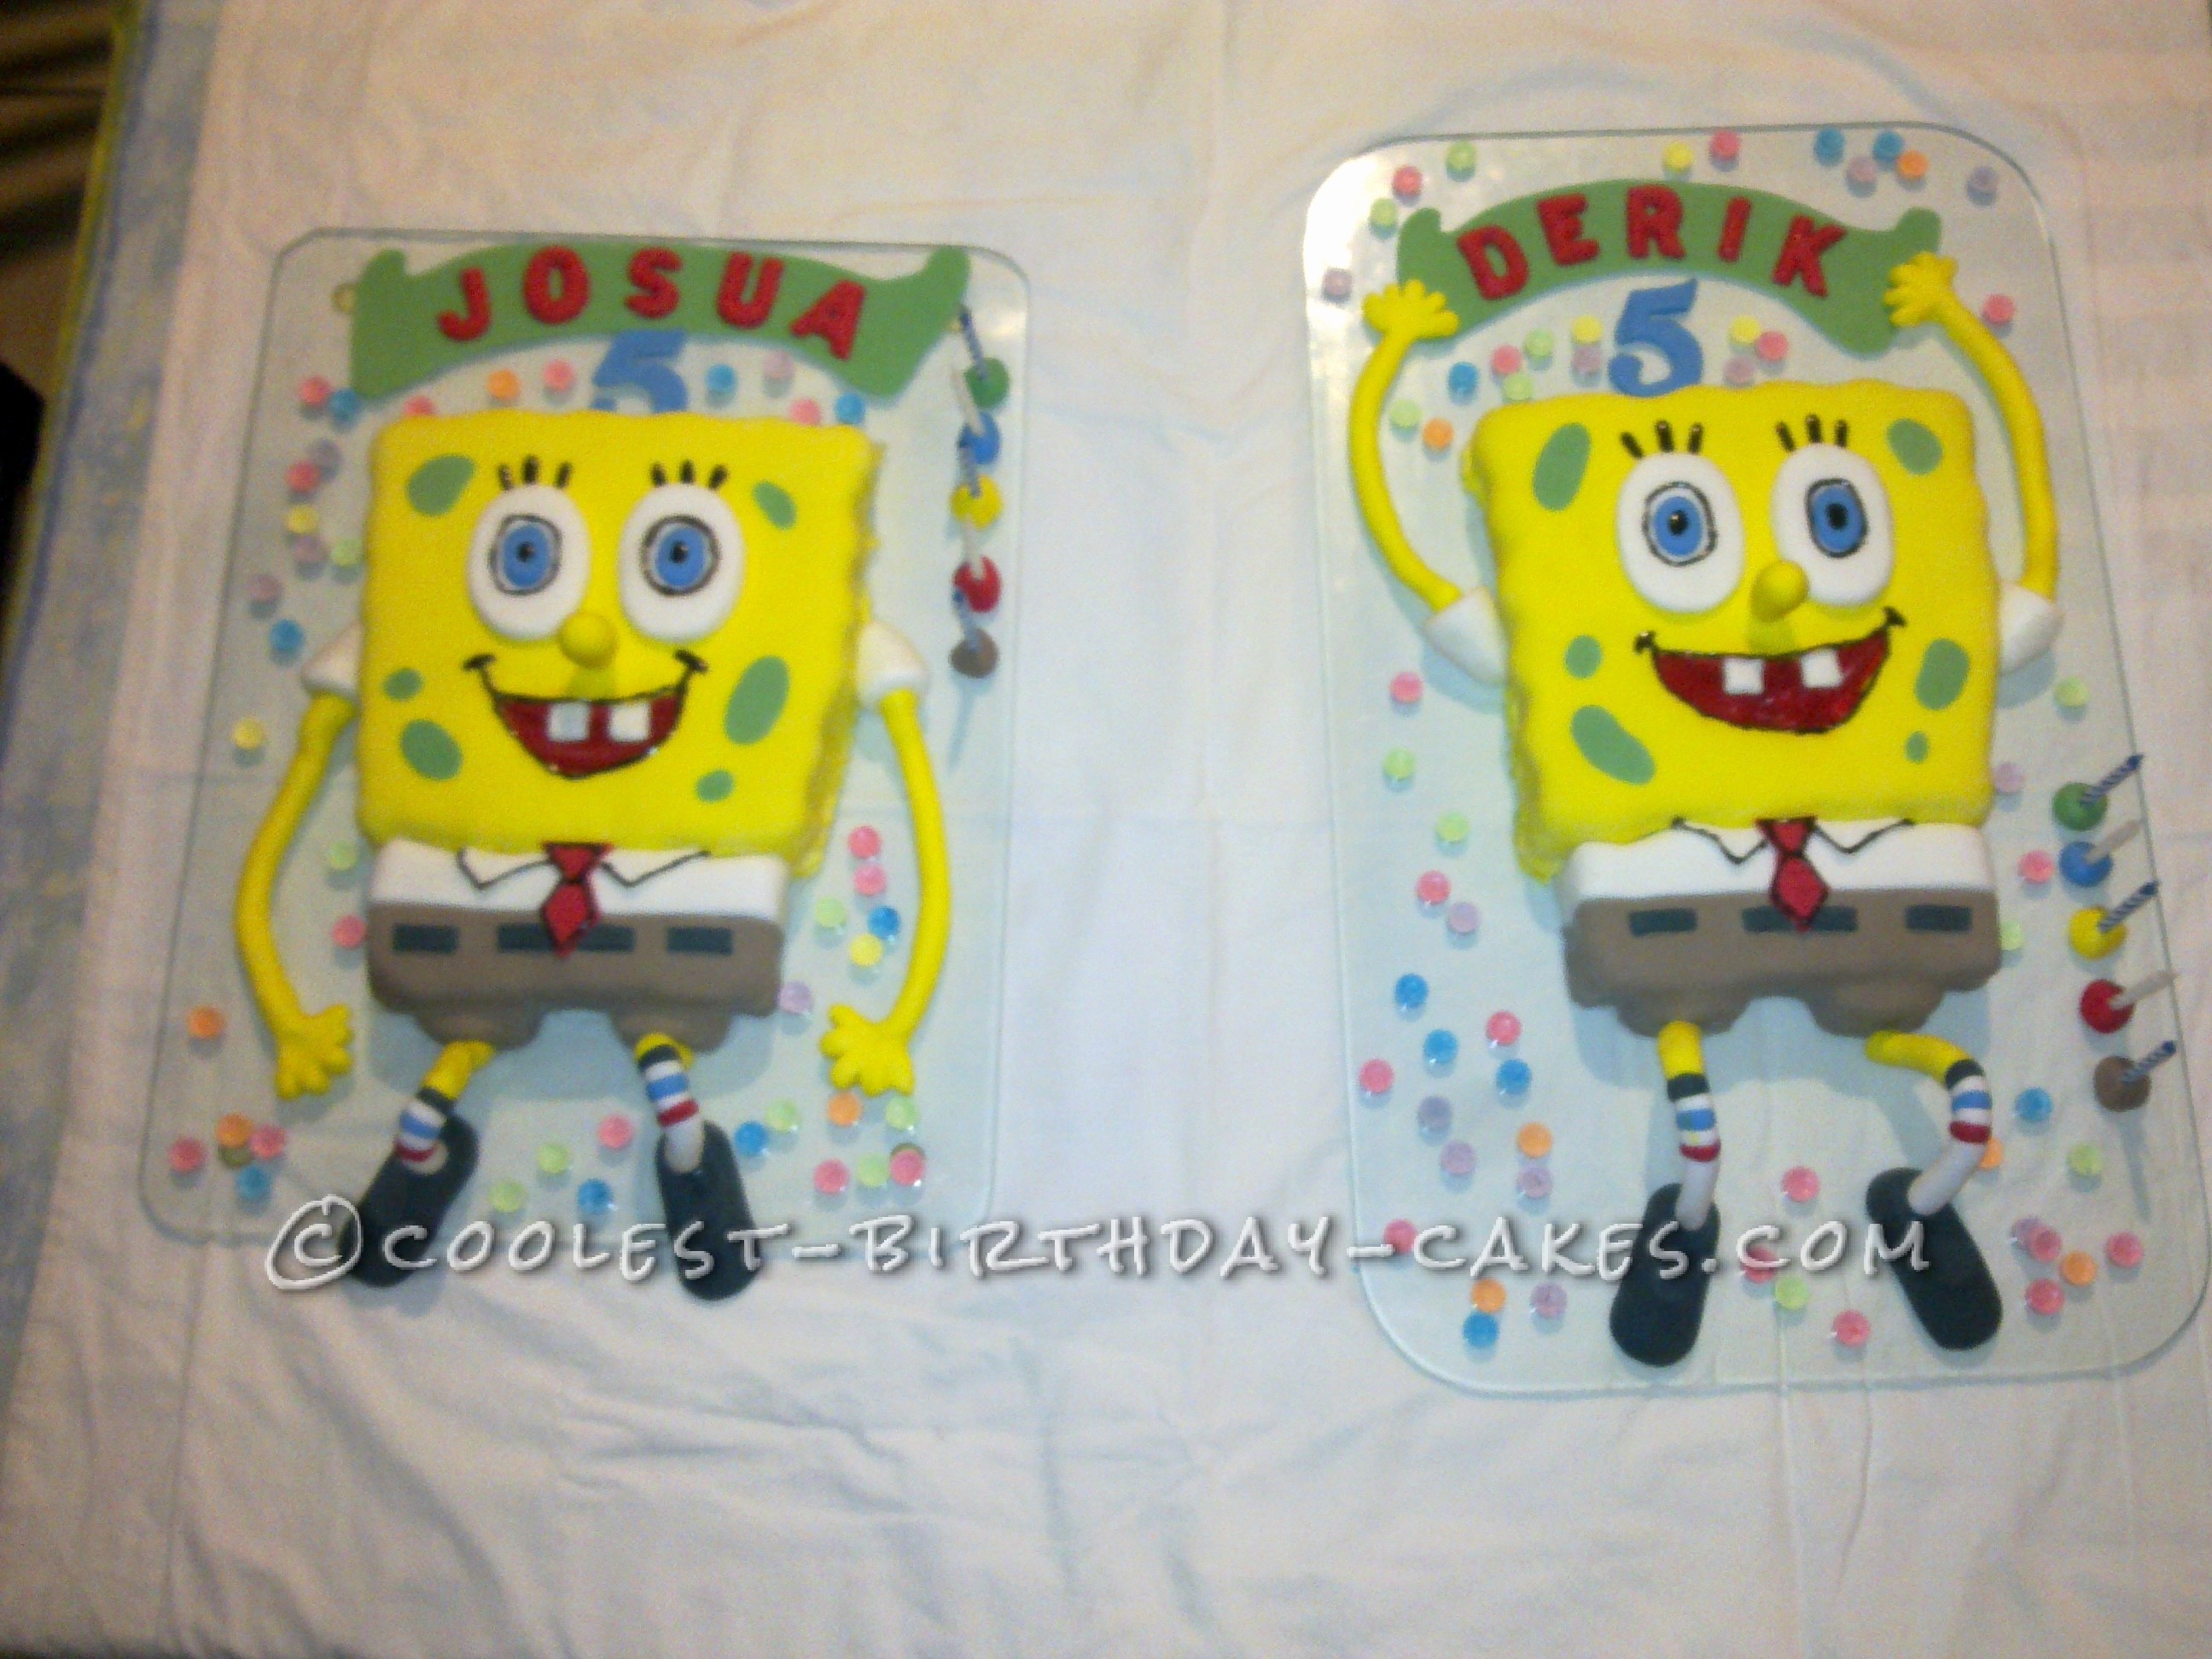 Coolest SpongBob Birthday Cakes